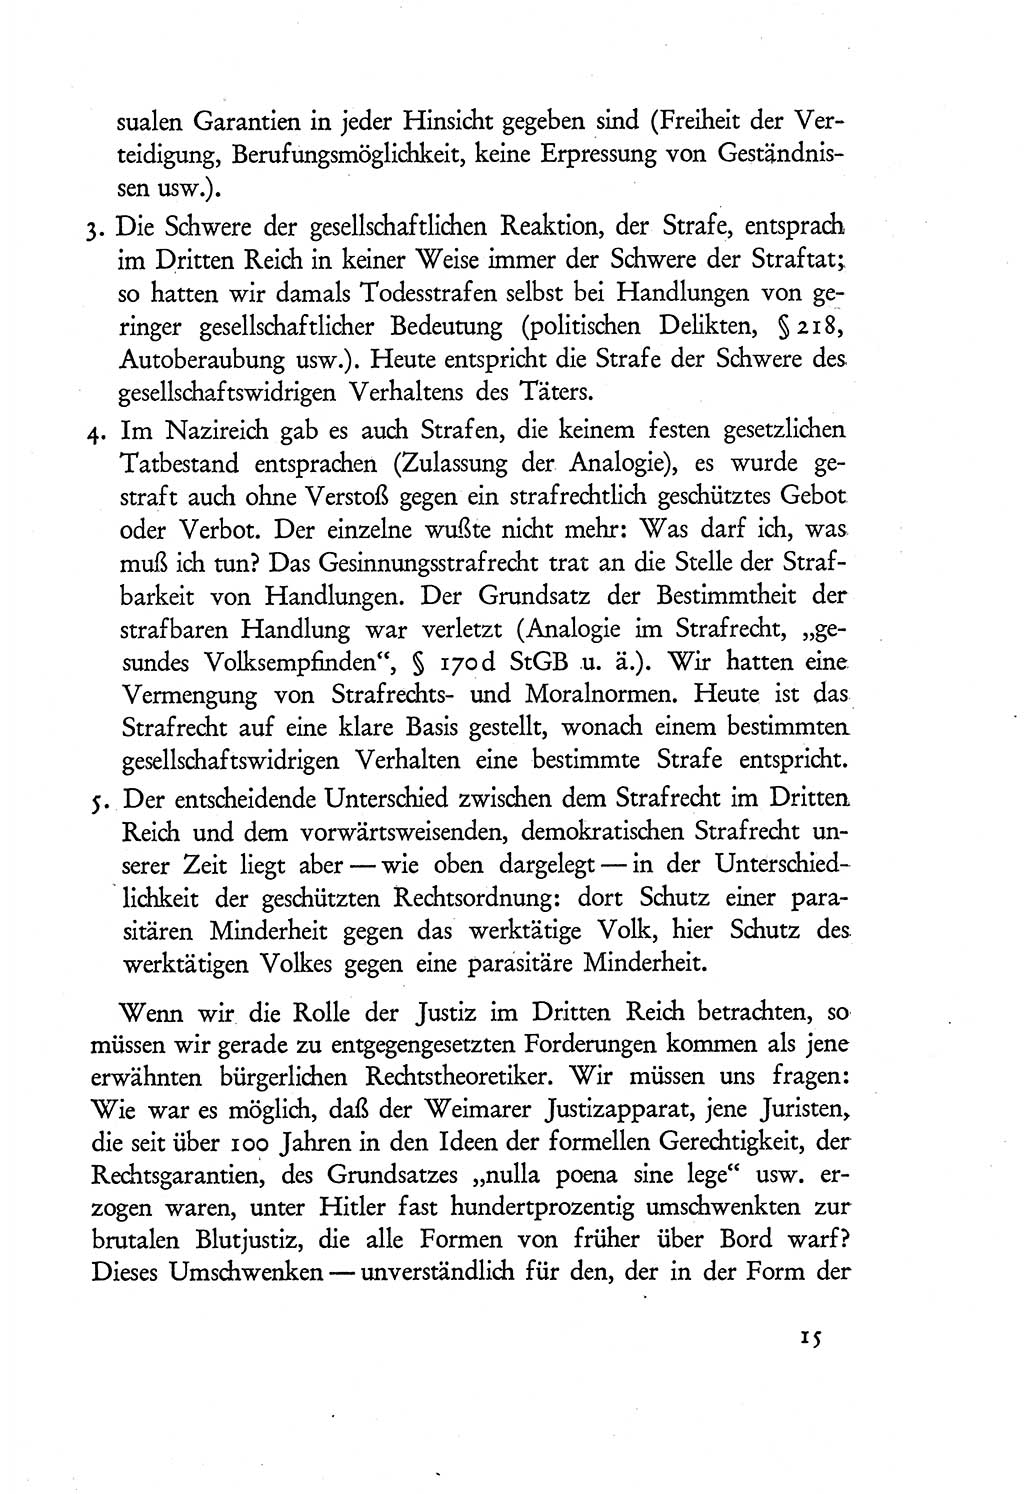 Probleme eines demokratischen Strafrechts [Sowjetische Besatzungszone (SBZ) Deutschlands] 1949, Seite 15 (Probl. Strafr. SBZ Dtl. 1949, S. 15)